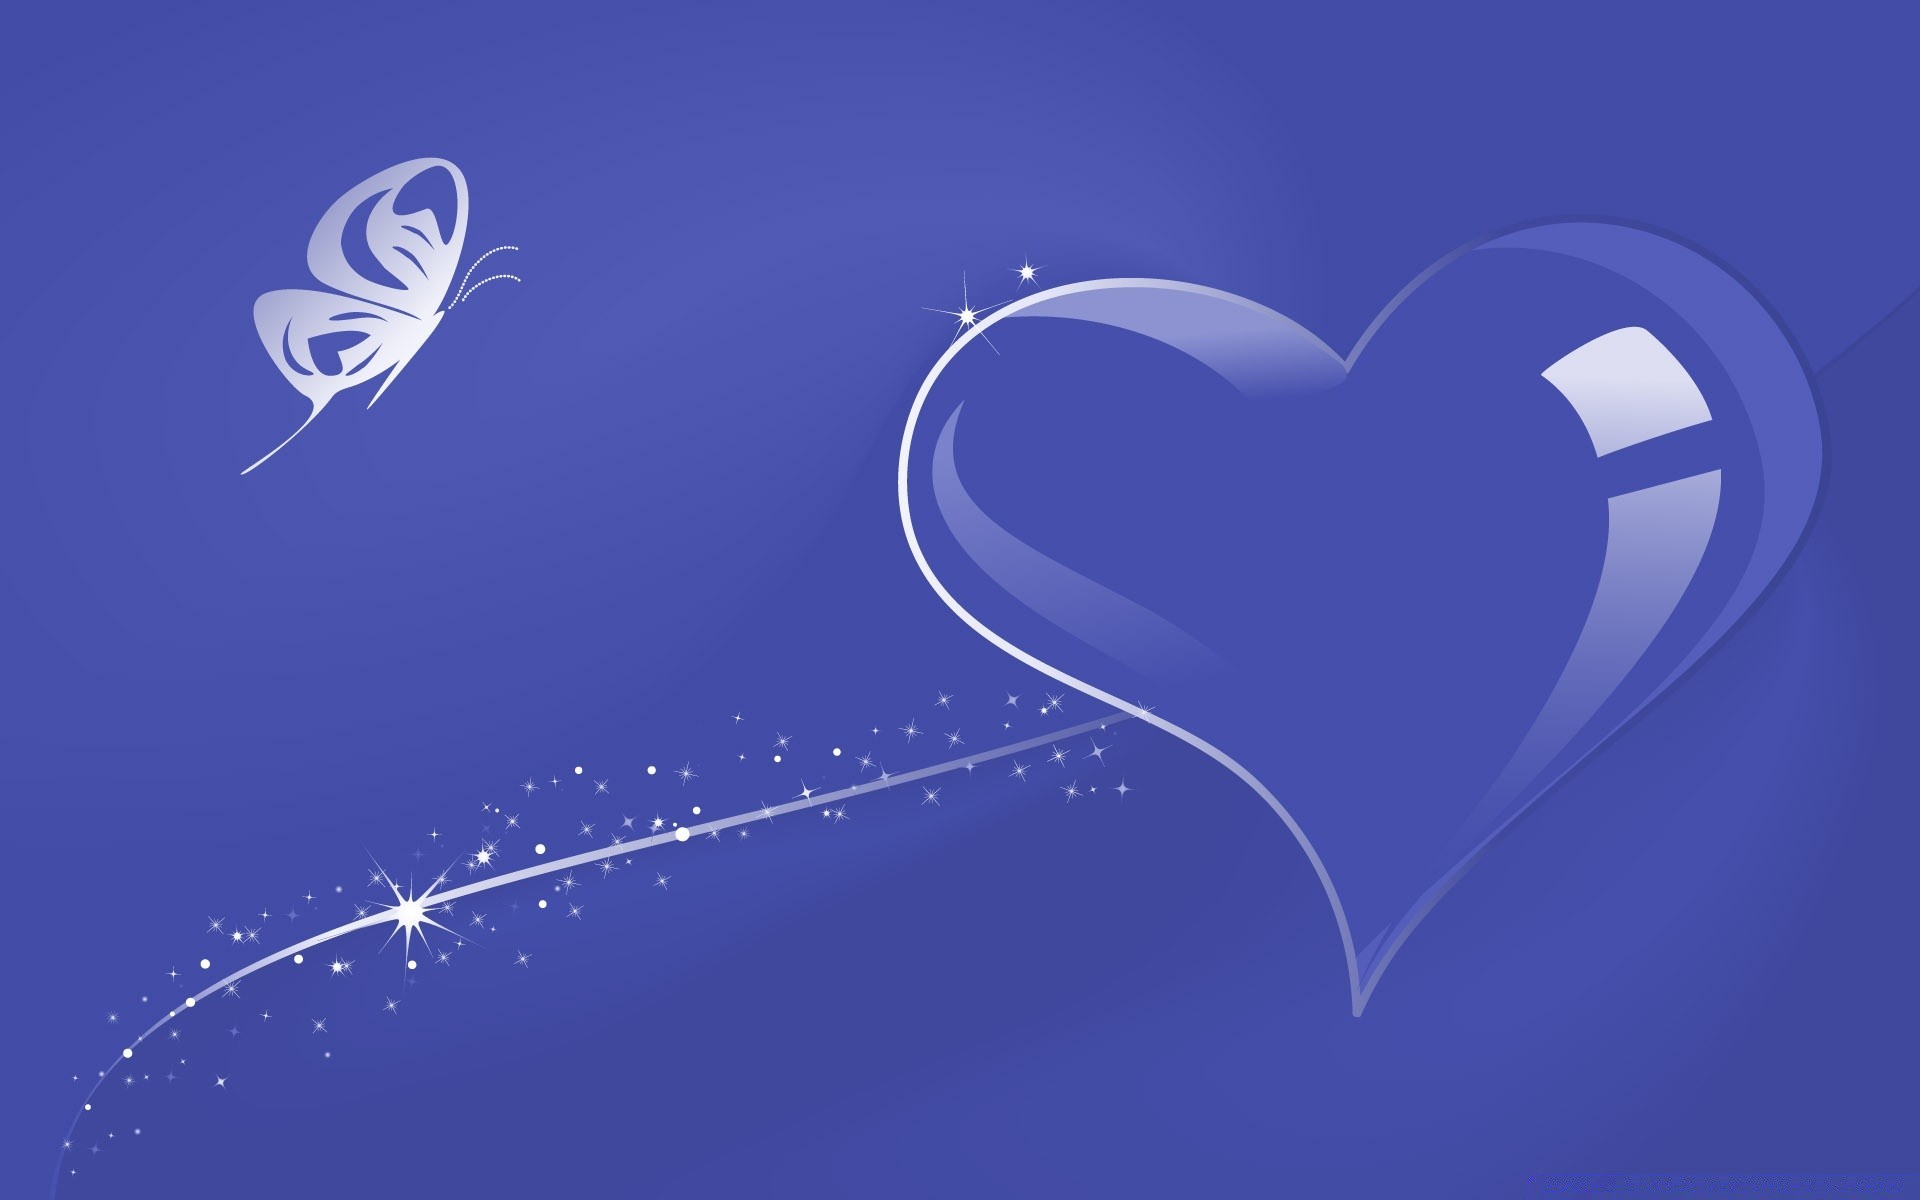 сердечки любовь сердце романтика формы иллюстрация рабочего стола дизайн вектор карта романтический приветствие аннотация природа праздник